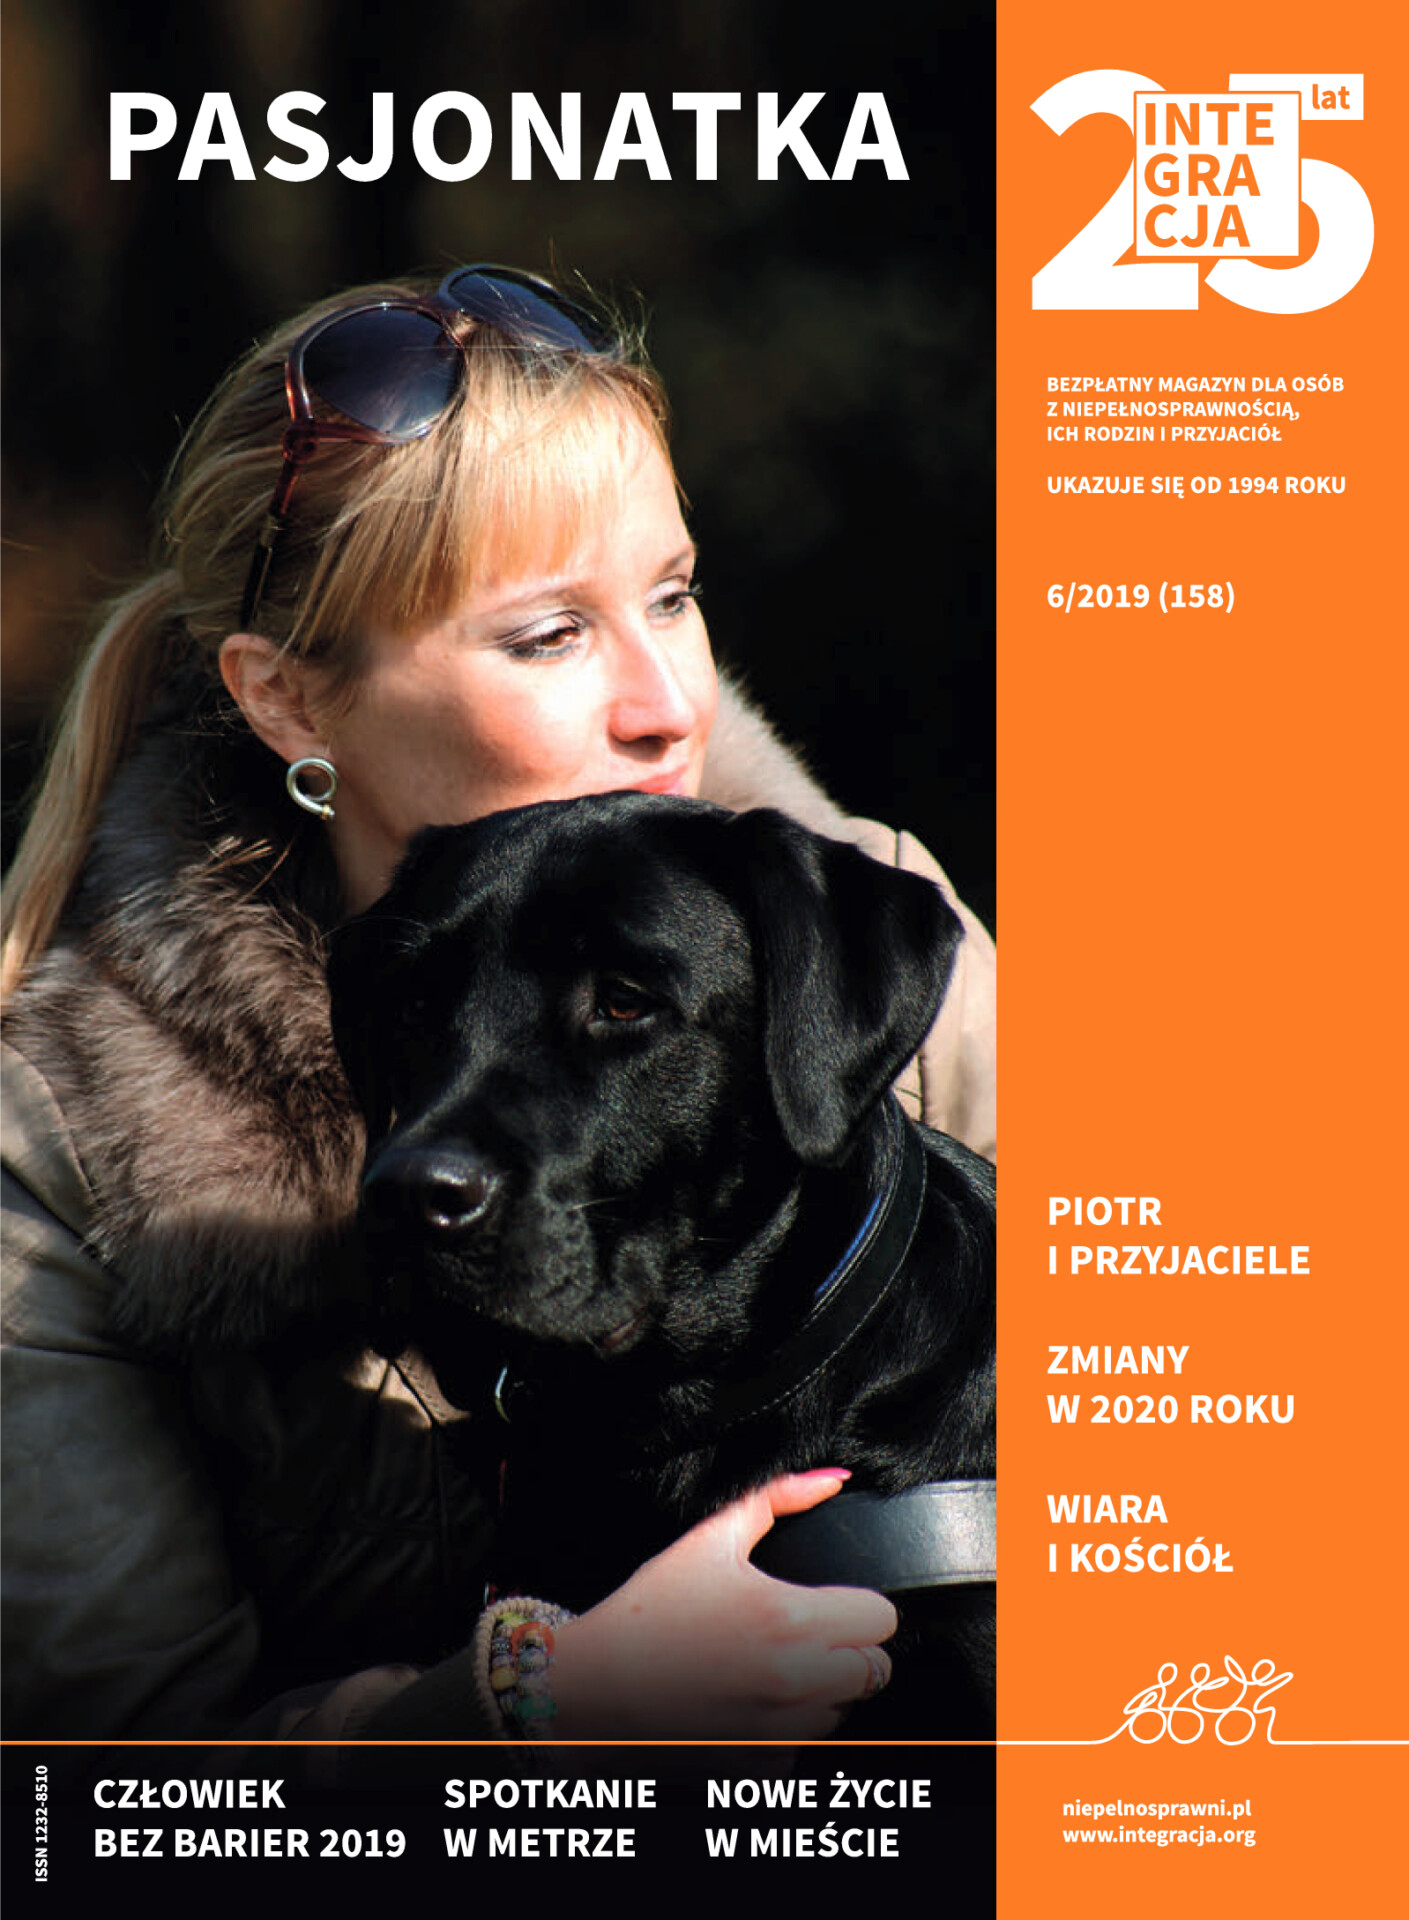 Okładka magazynu Integracja 6/2019. Dorota Ziental, niewidoma aktorka serialu "Pasjonatka" przytula czarnego labradora. Kliknięcie przekierowuje do całego magazynu w PDF-ie dostępnym.